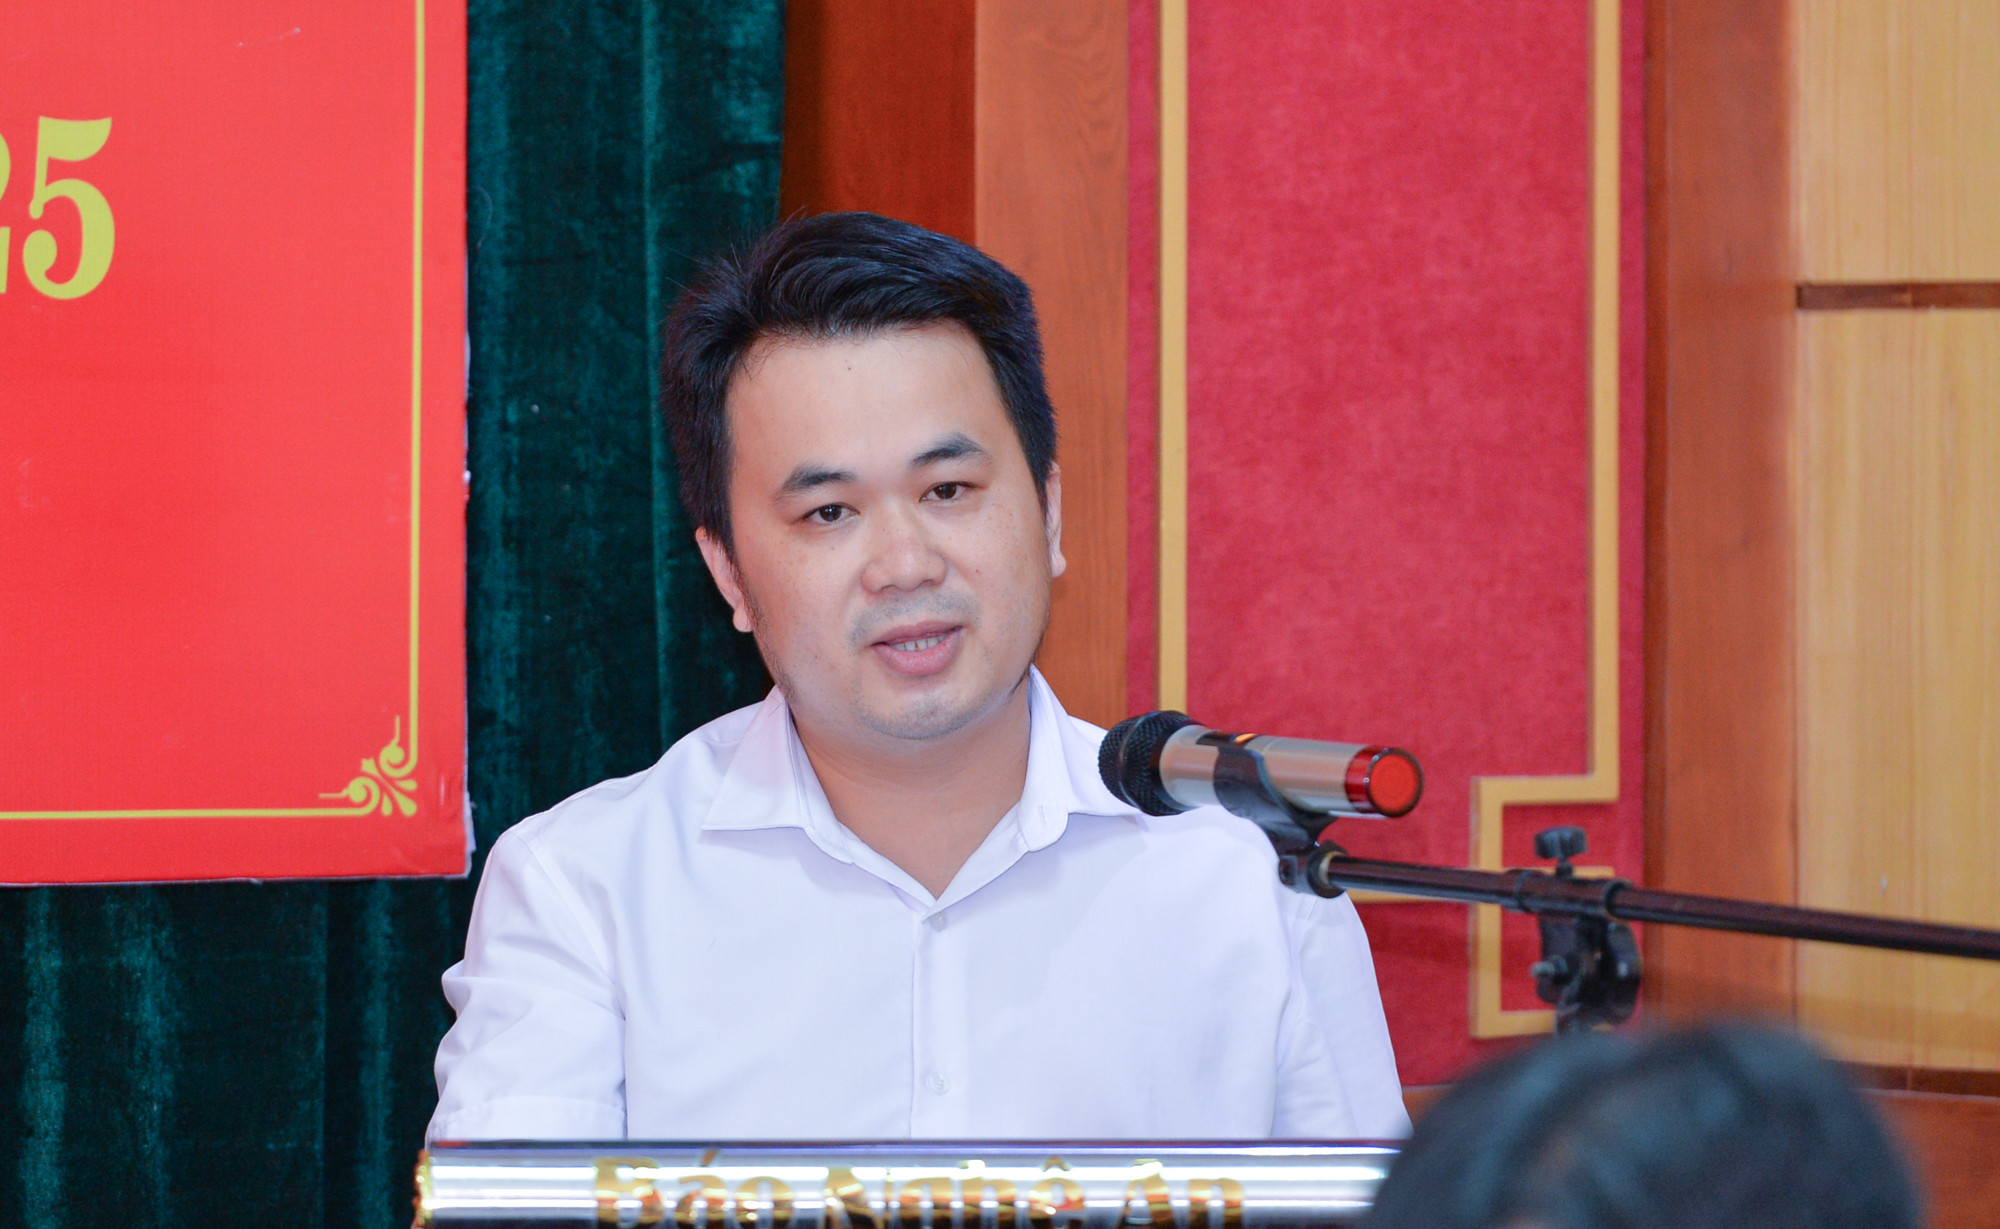 Đồng chí Nguyễn Thành Duy - Chi ủy viên, phóng viên phòng Thời sự Chính trị trình bày tham luận tại Đại hội. Ảnh: Thành Cường